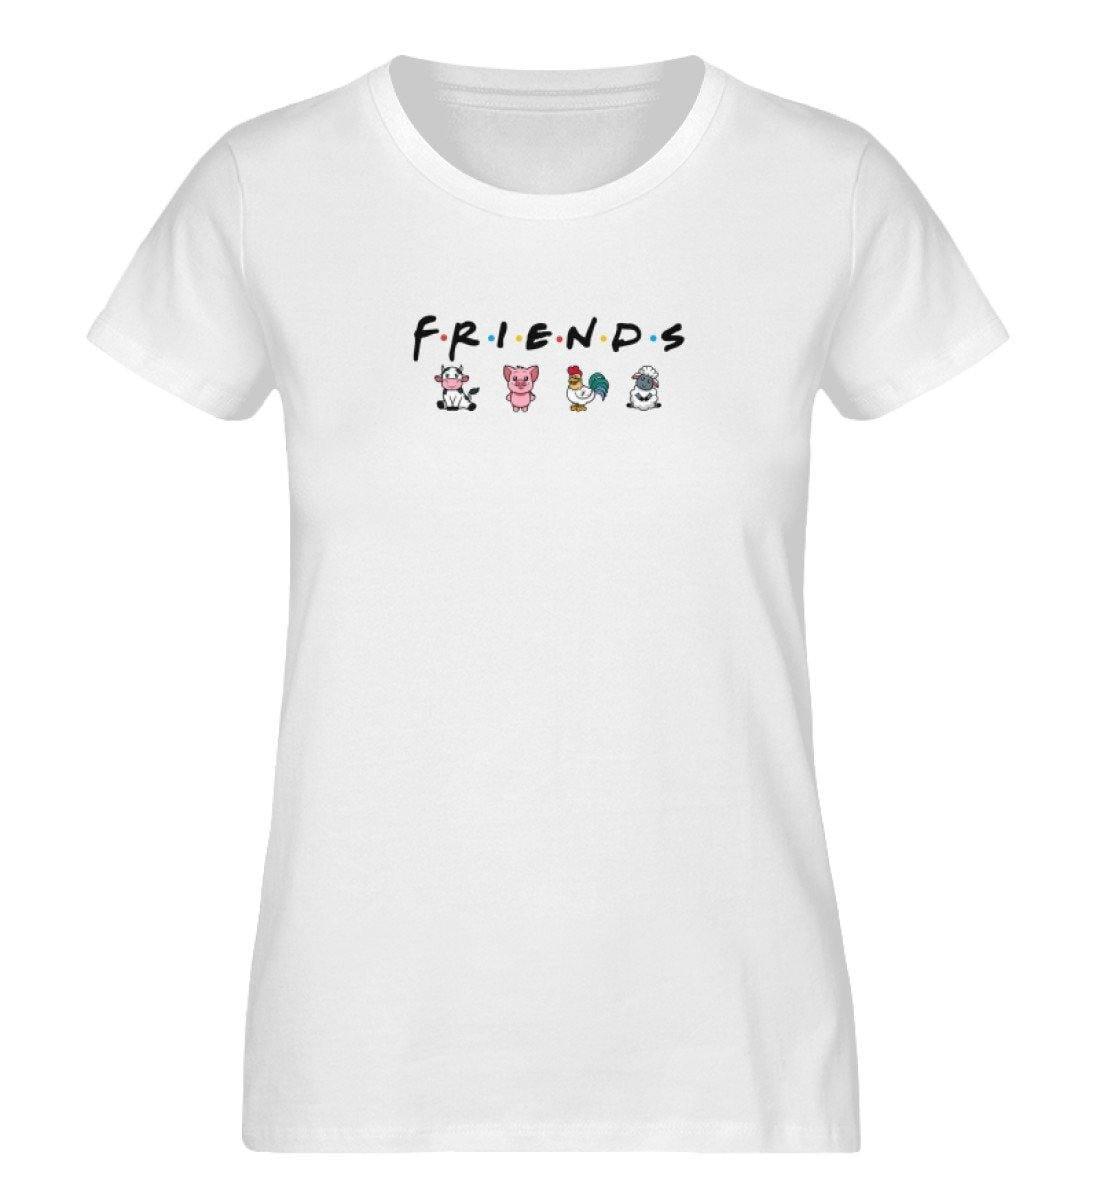 Friends - Damen Organic Shirt - Team Vegan © vegan t shirt